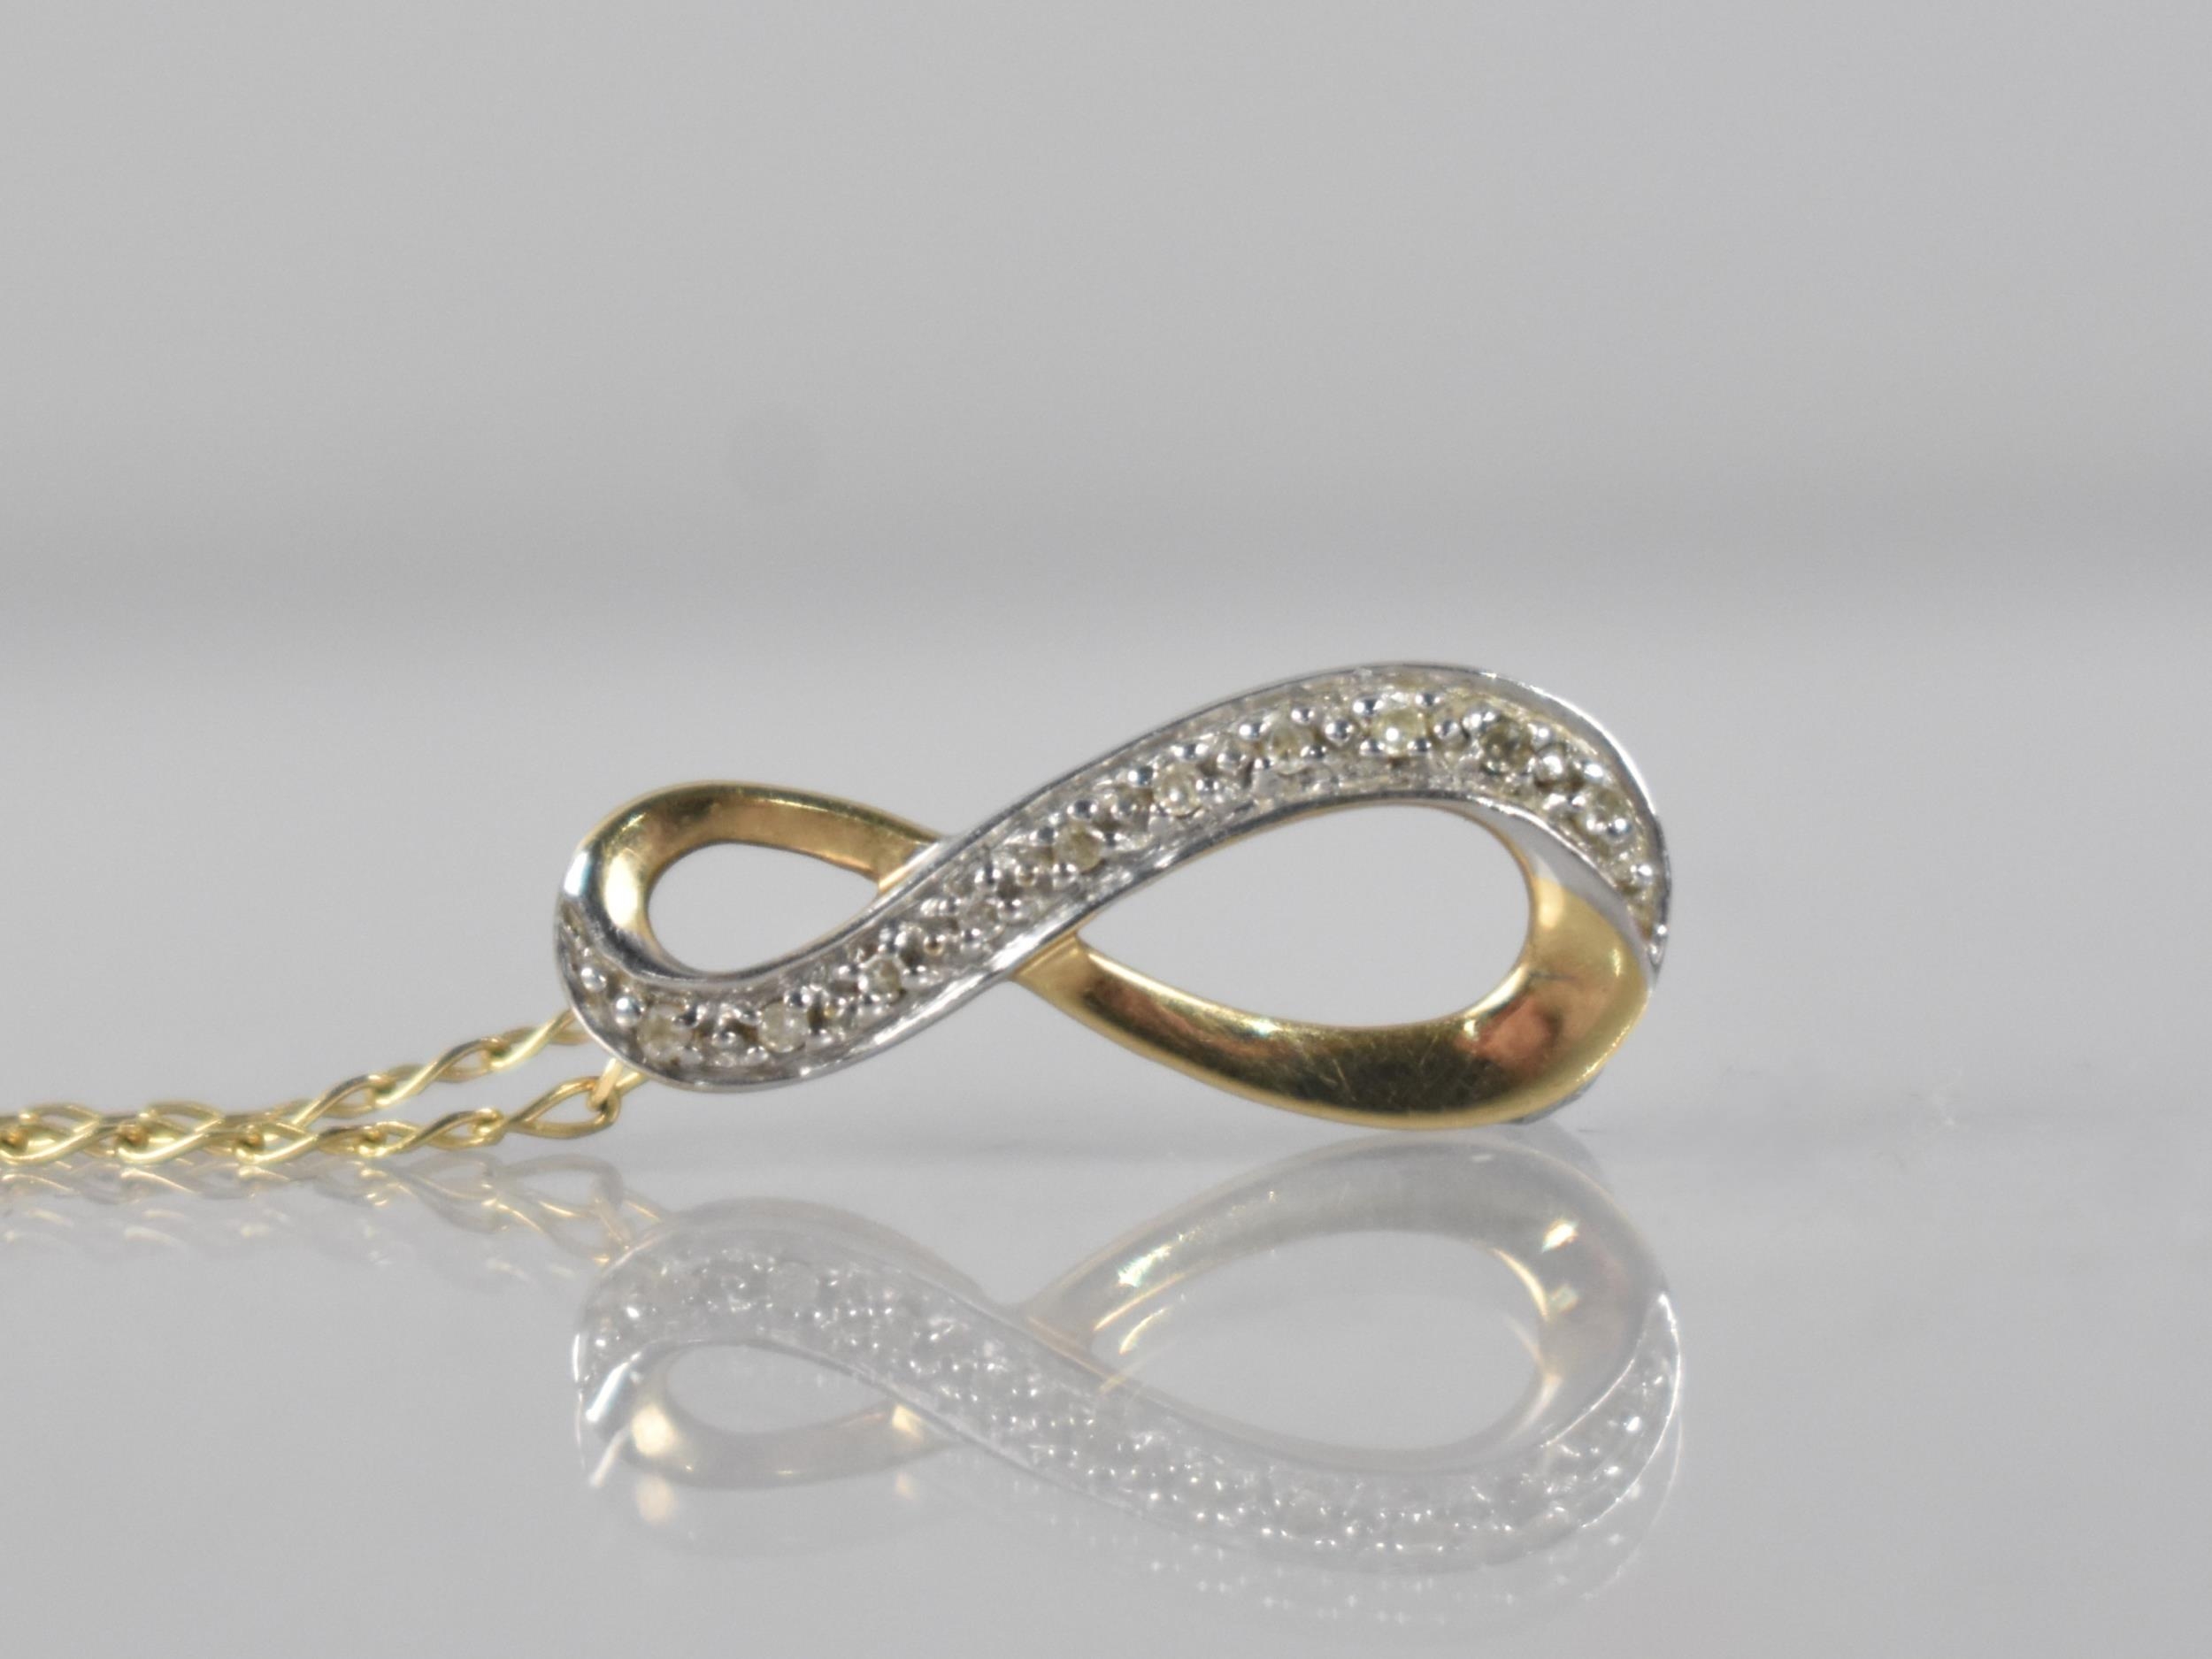 A Diamond Mounted Pendant on 9ct Gold Chain, Ten Round Cut Diamonds Milgrain Set in White Metal to